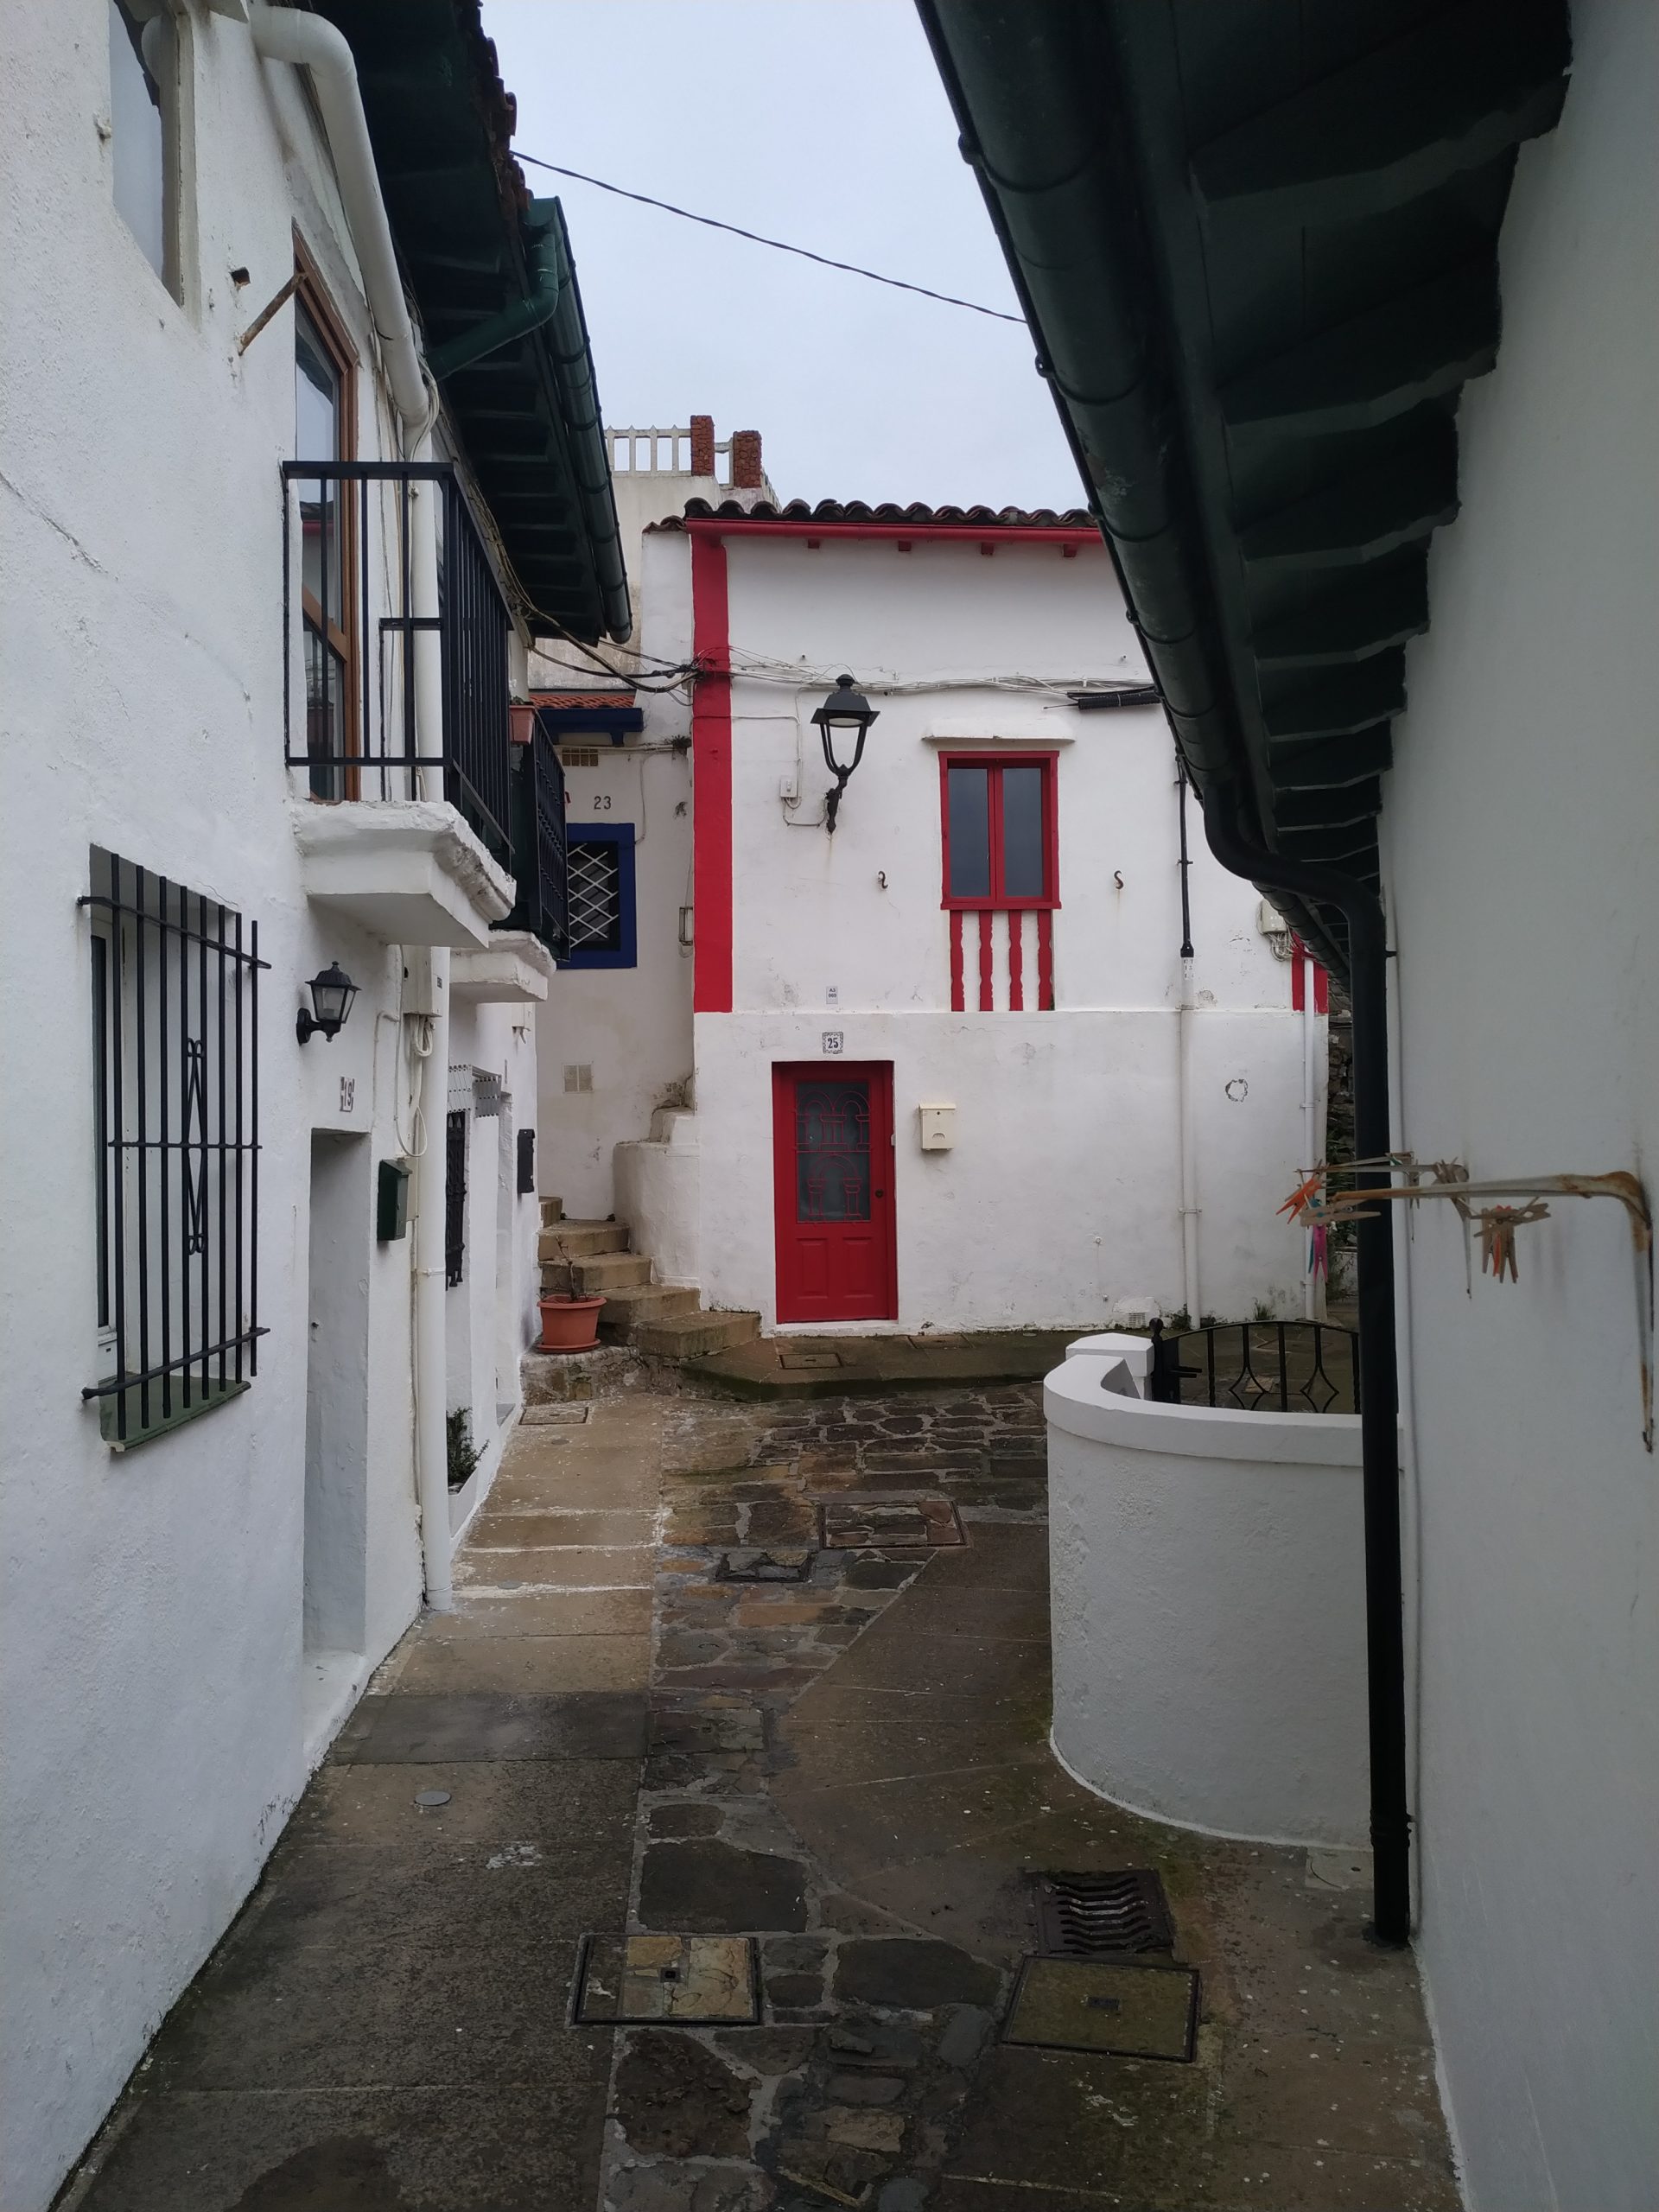 Casas-Blancas-del-Puerto-viejo-de-Algorta-Bizkaia